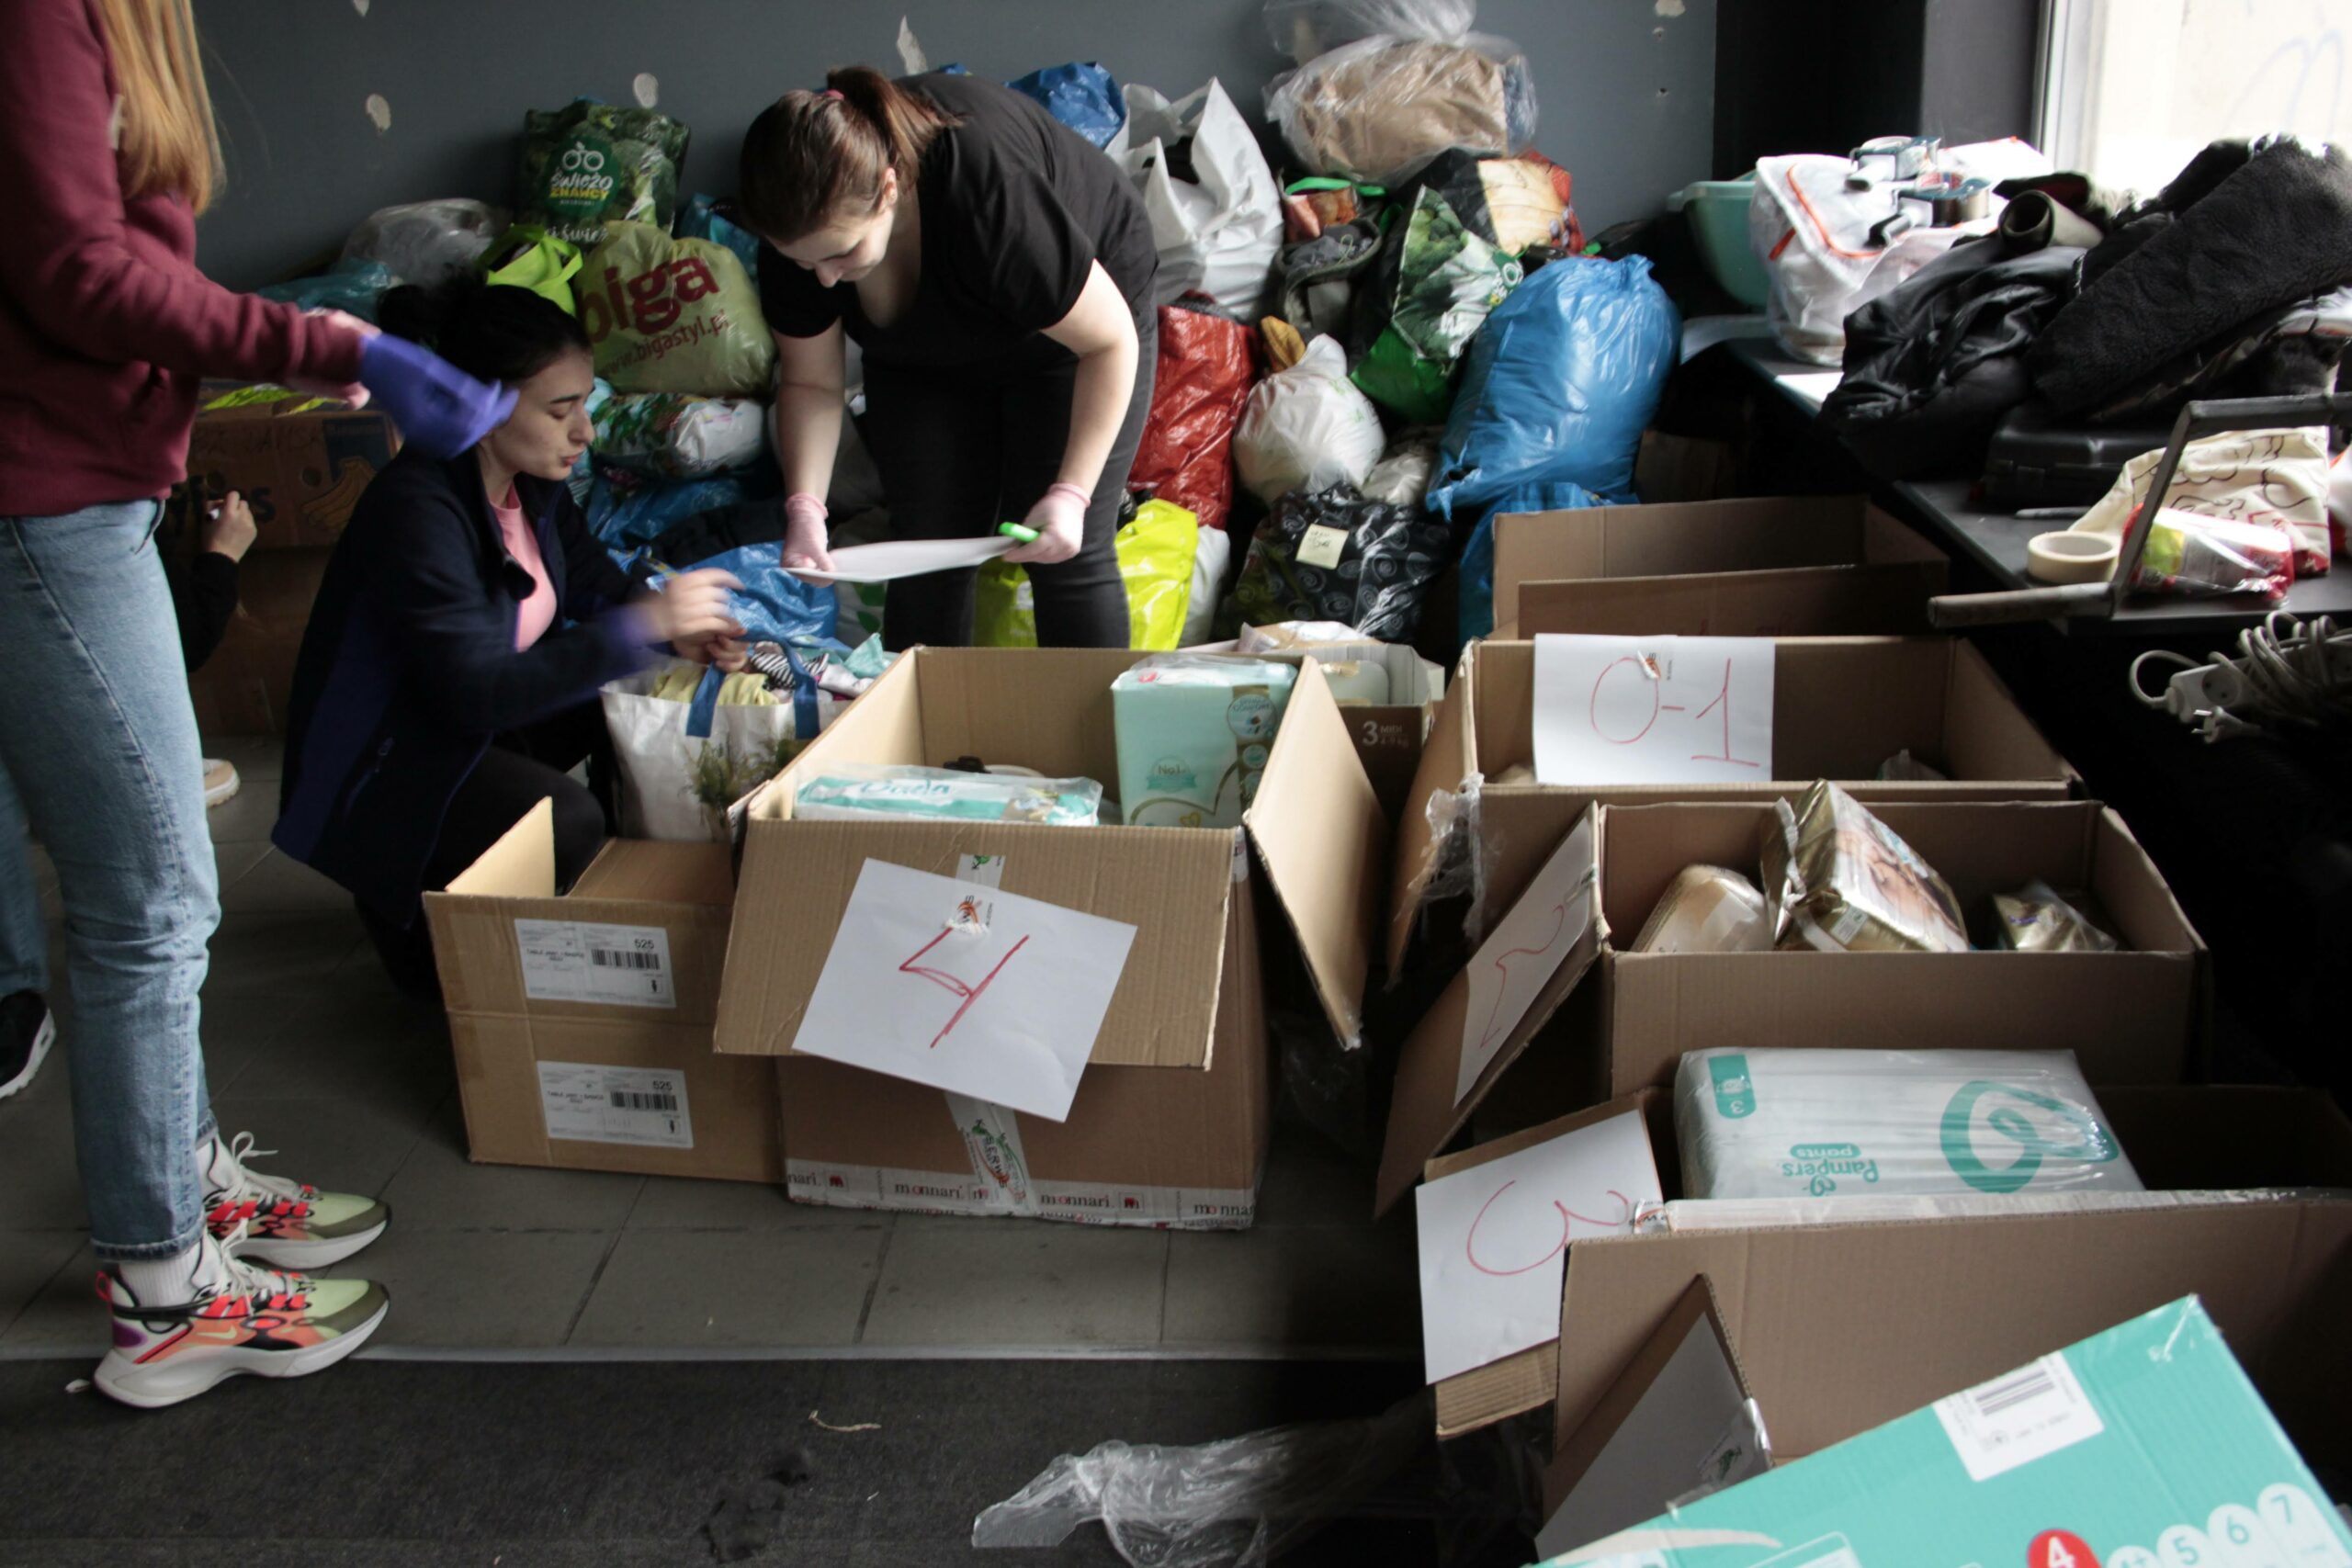 pomoc dla Ukrainy - zdjecie z wnętrza magazynu gdzie prowadzona jest zbiórka darów